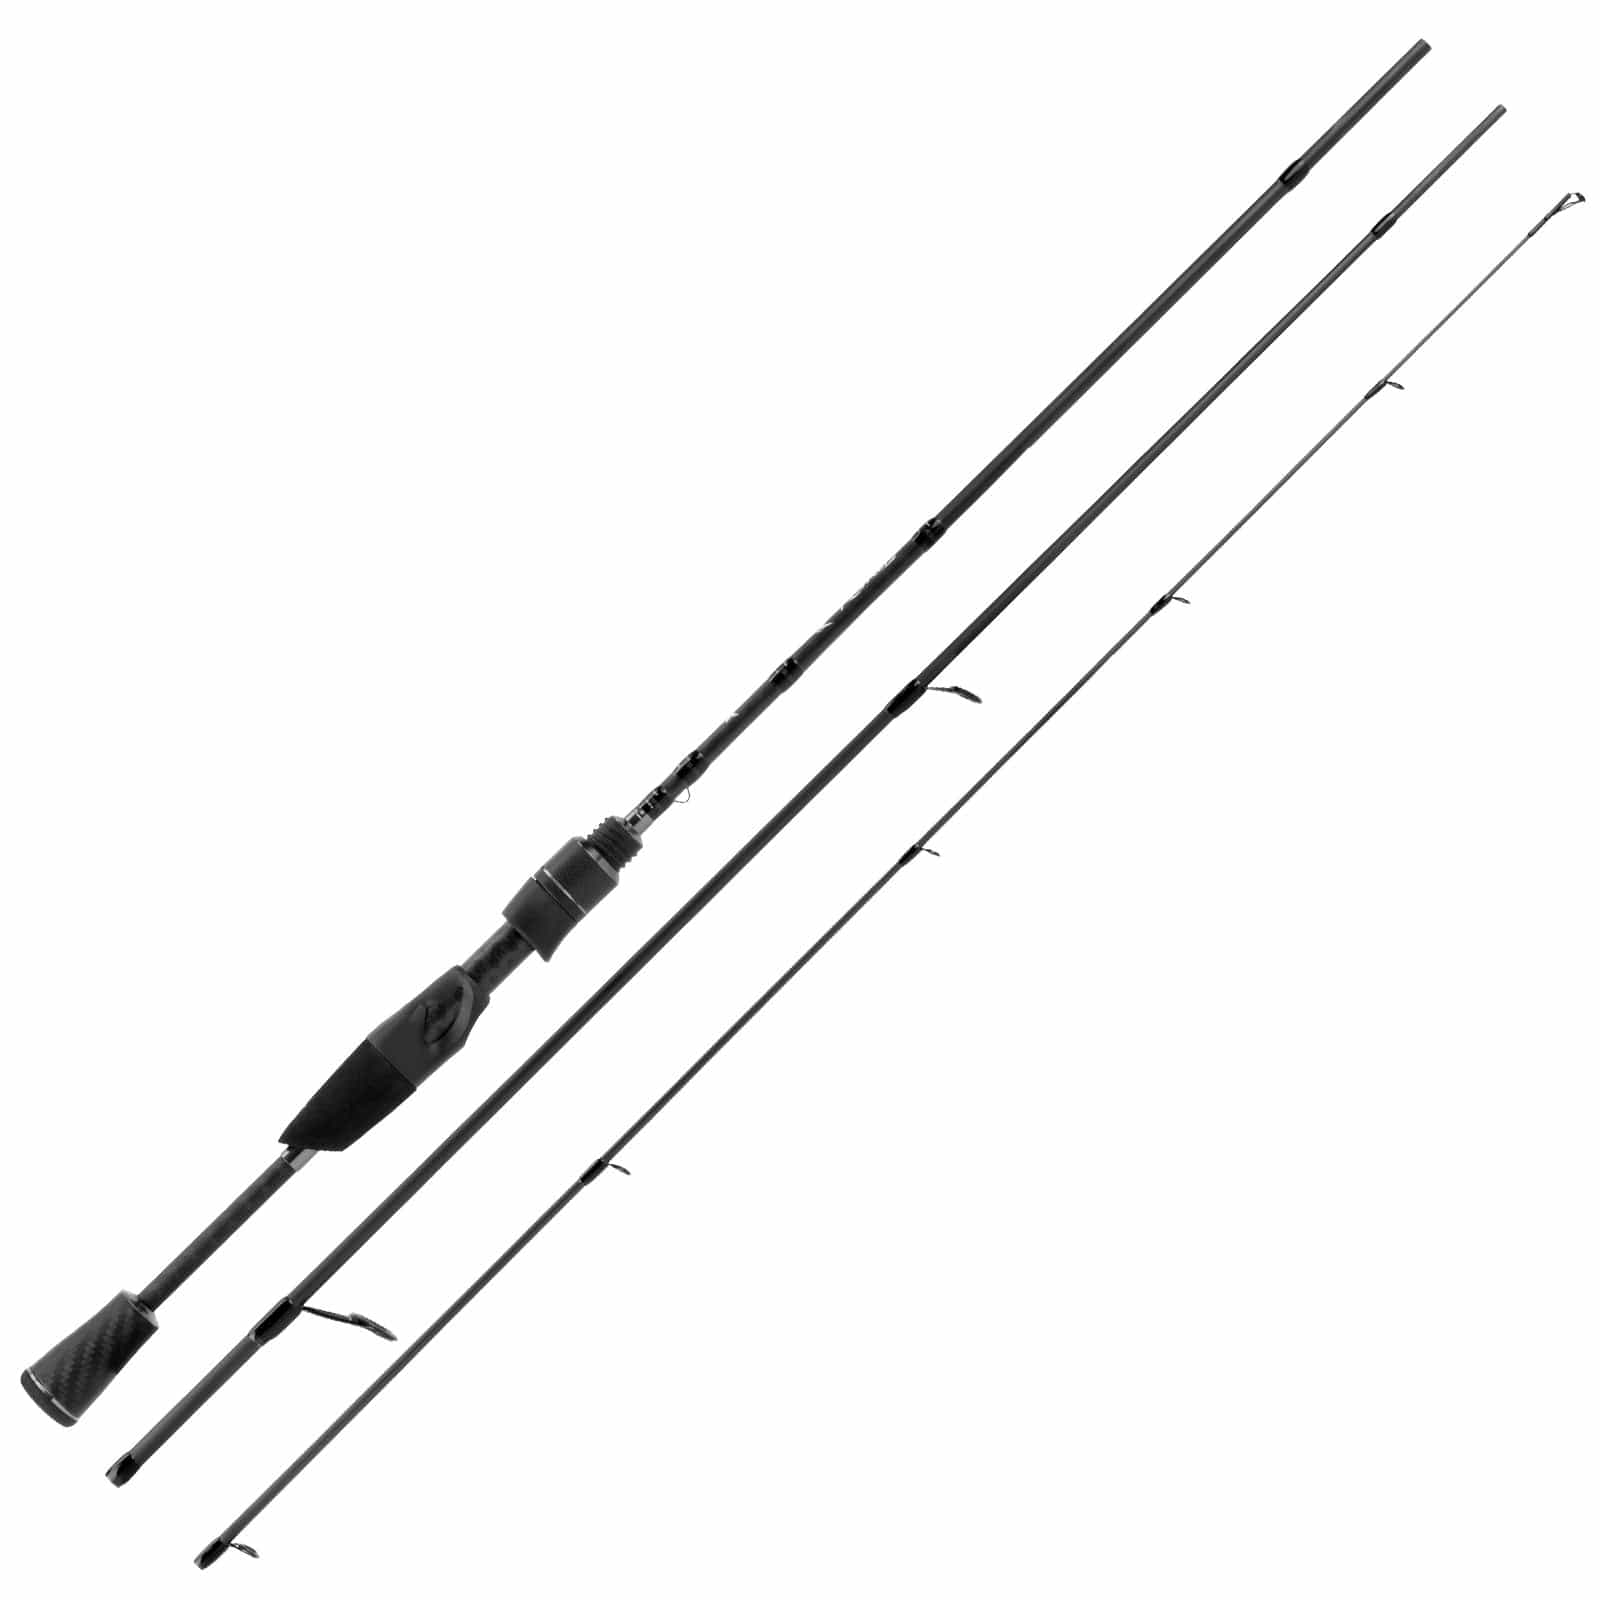 KastKing Kestrel Finesse Fishing Rod